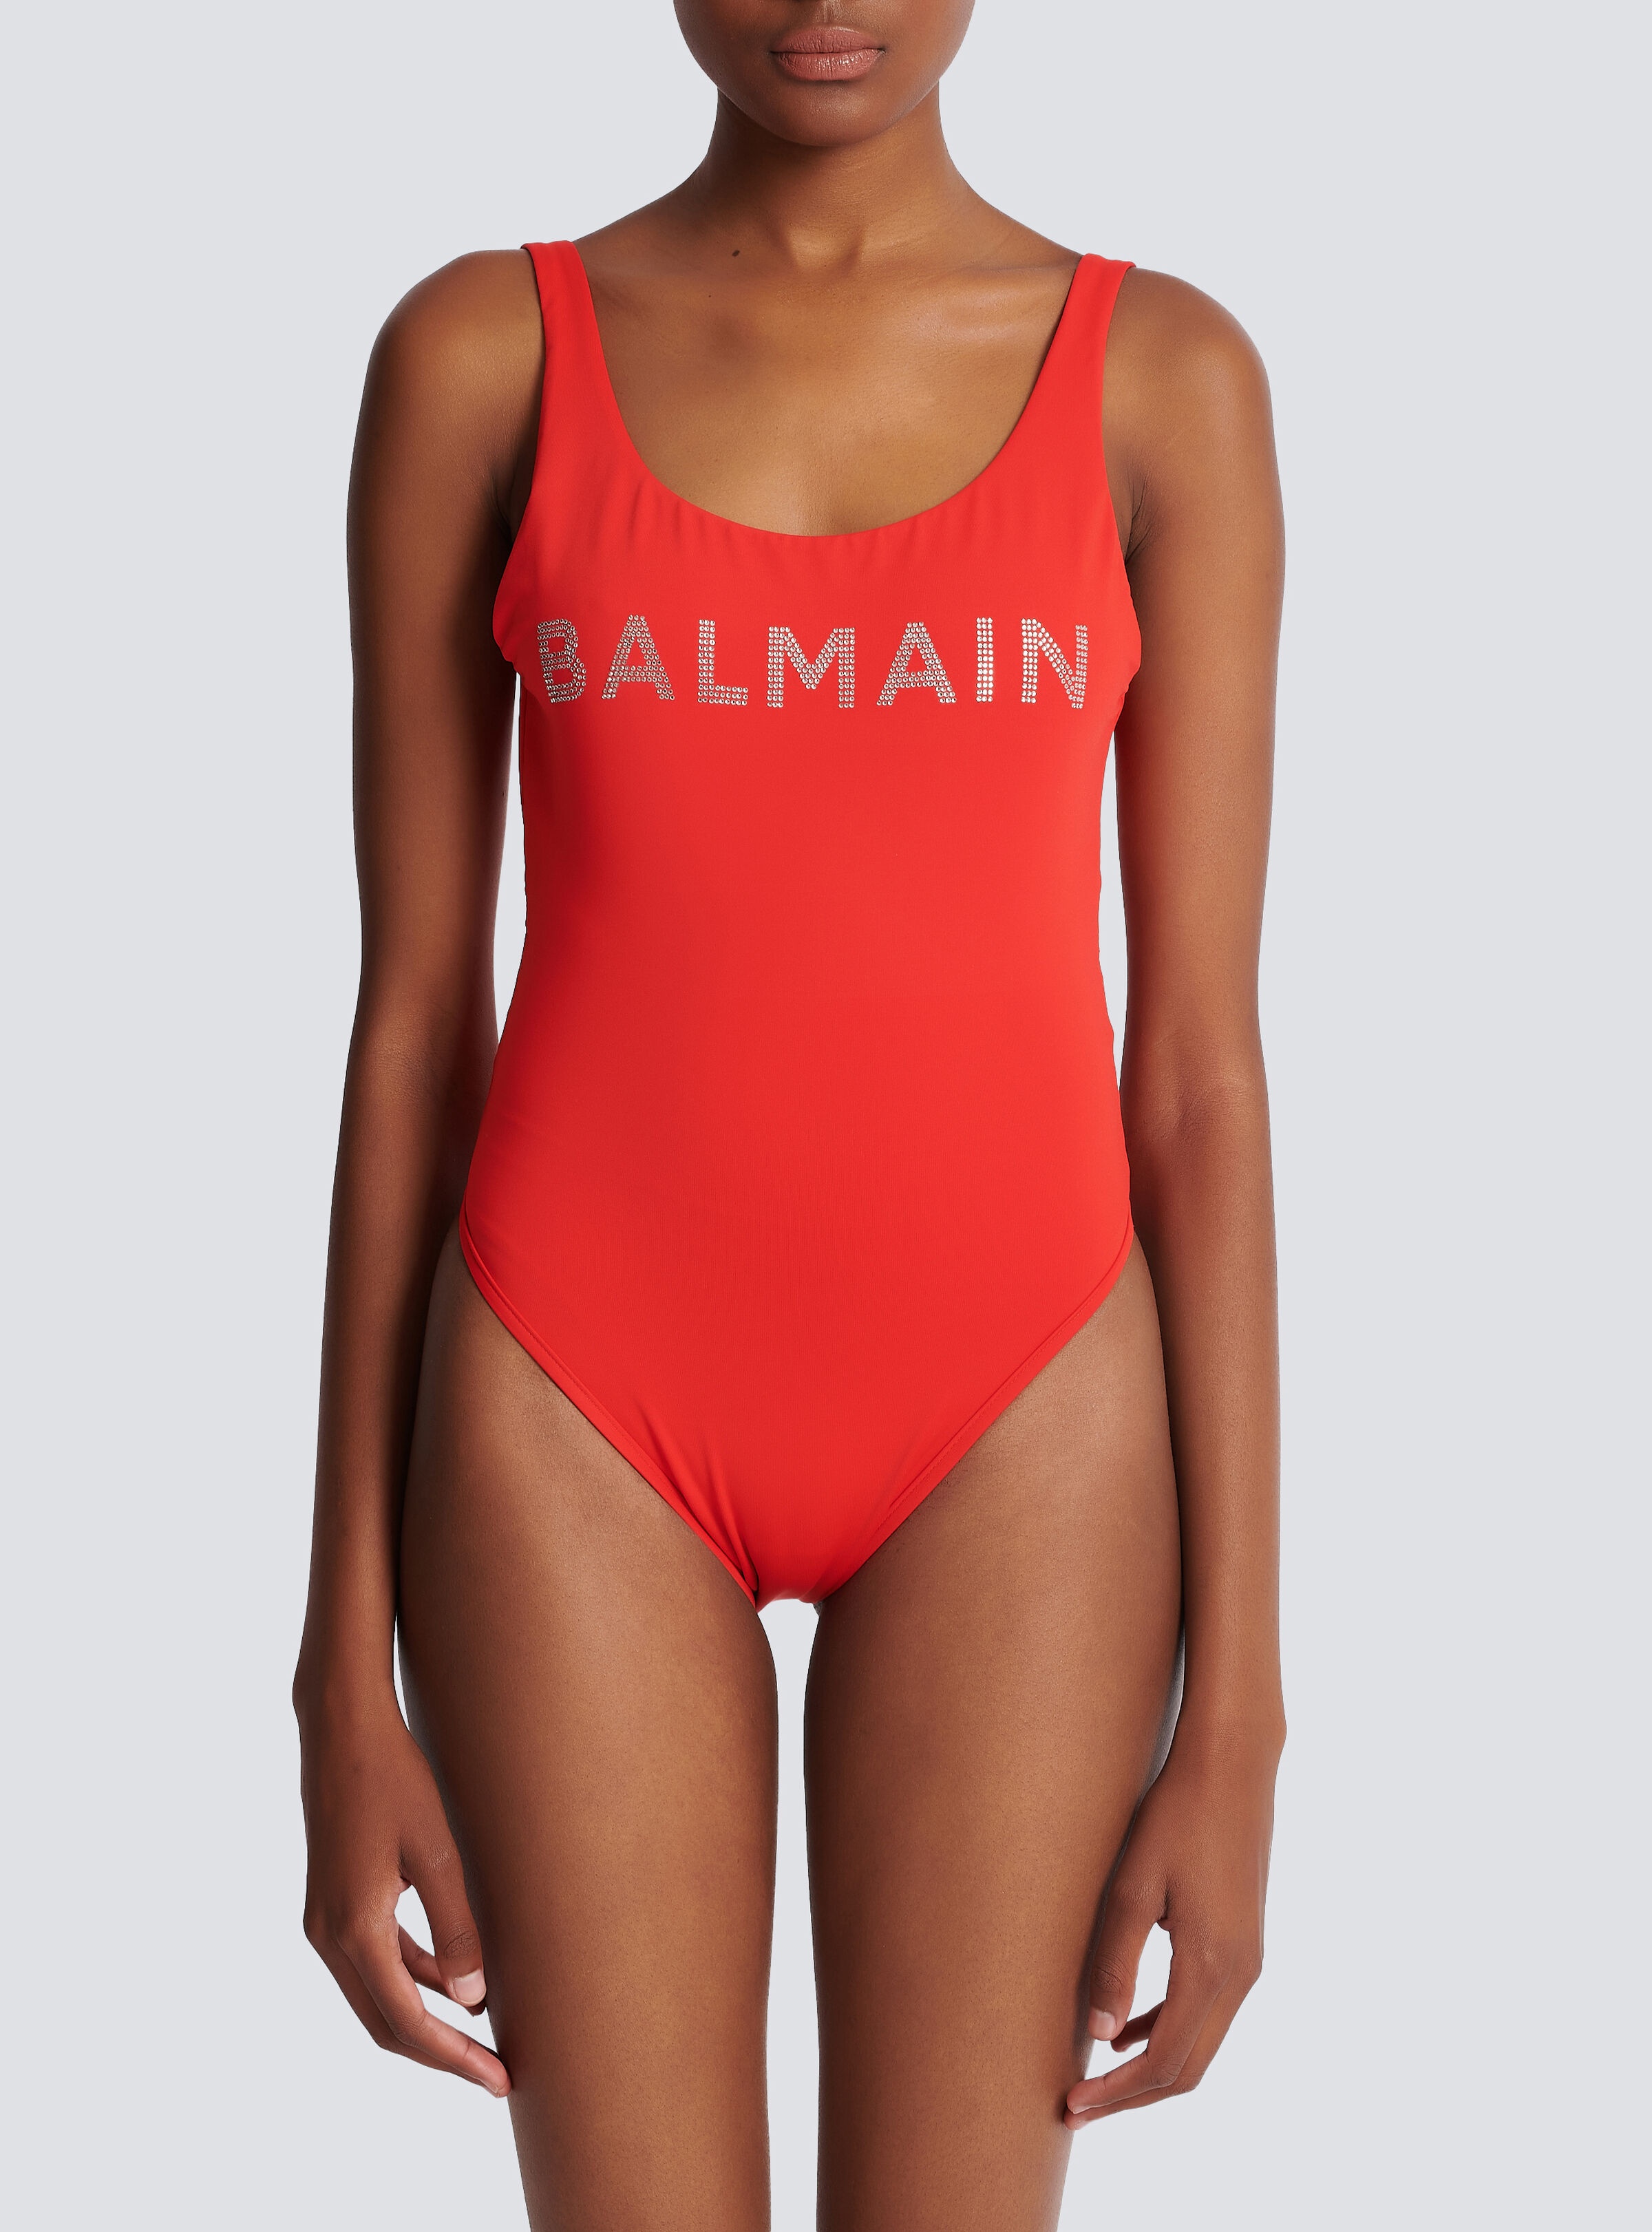 Balmain logo swimsuit - 5